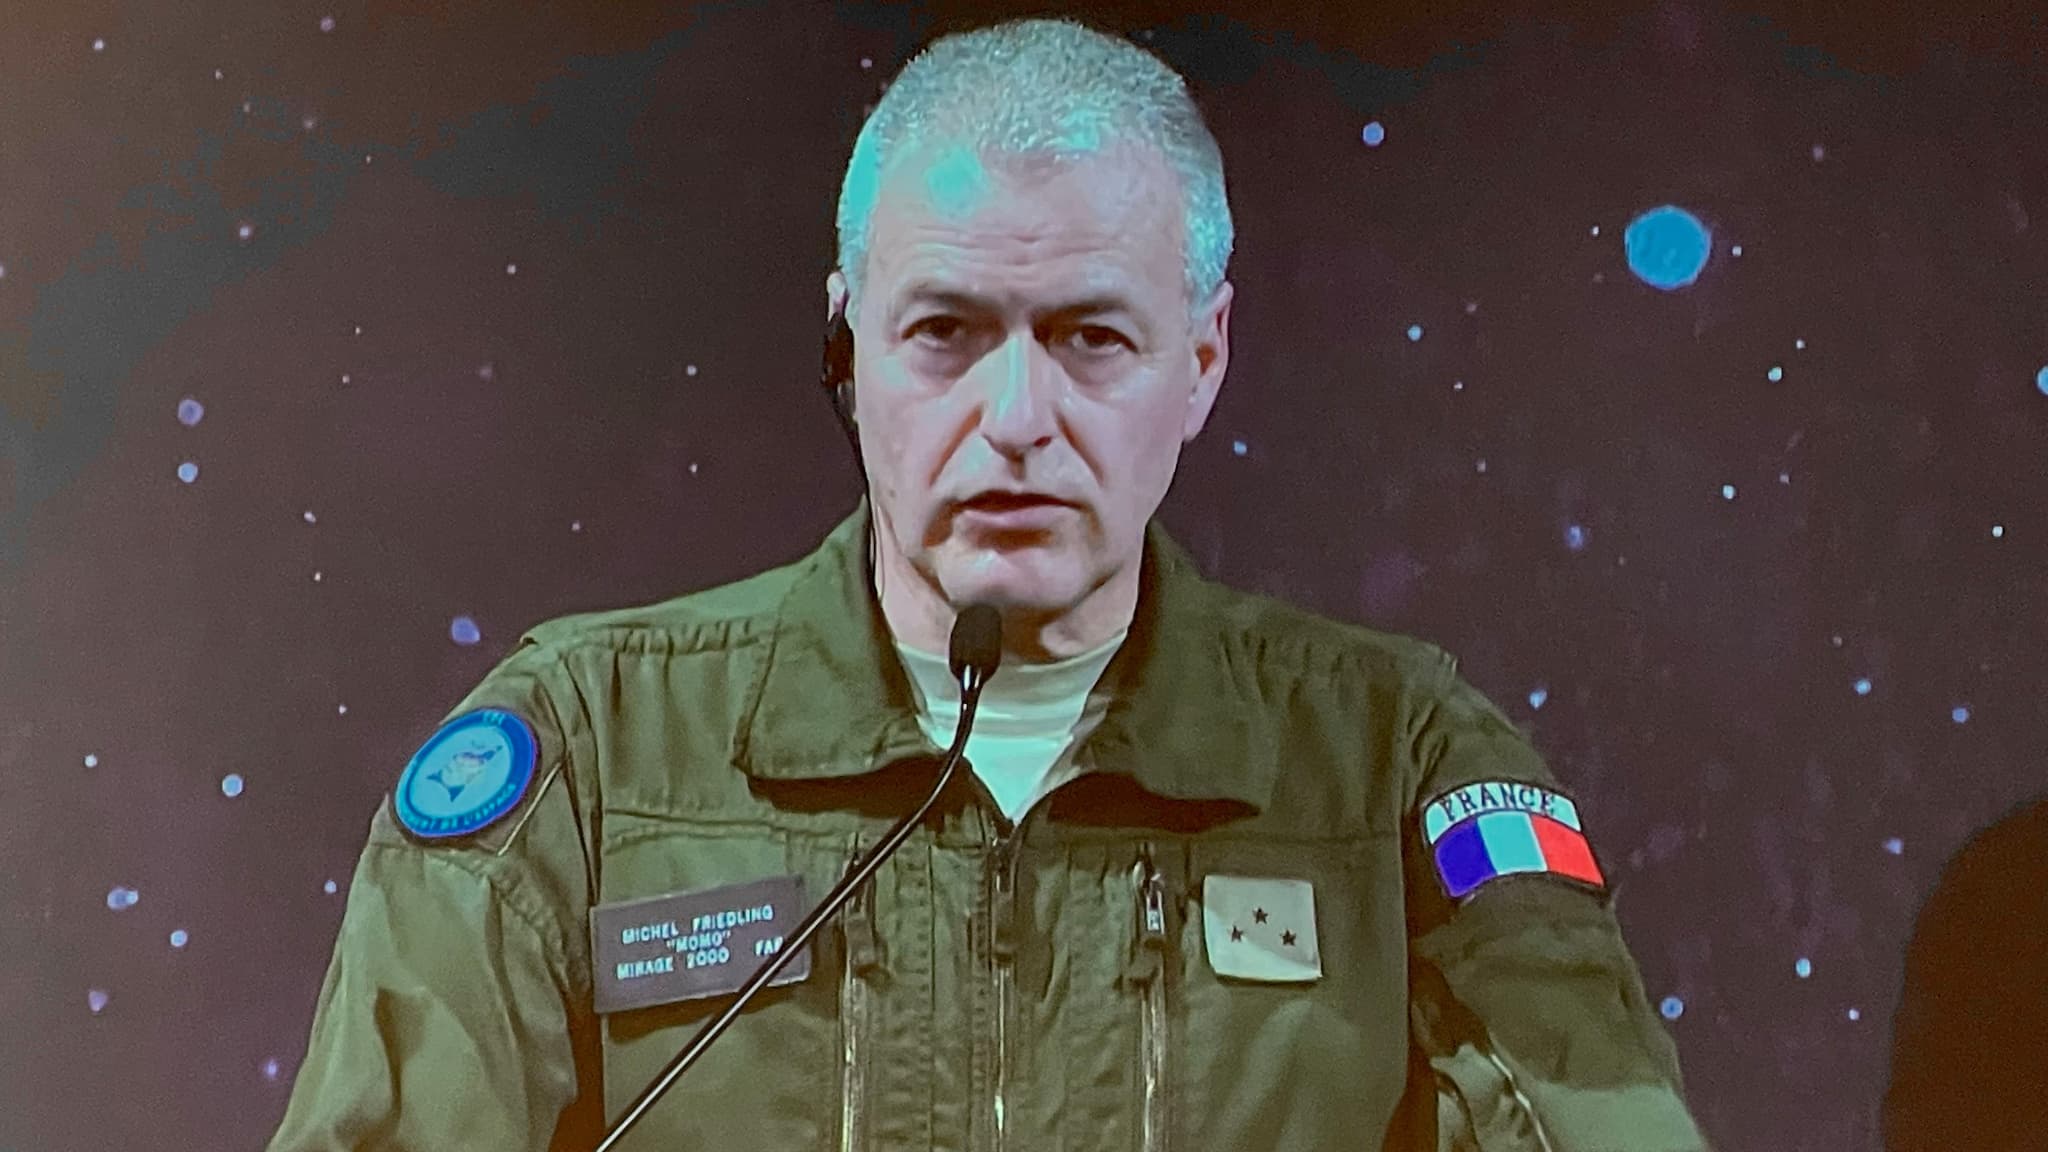 Bouquins on X: 📆 Rendez-vous ce jeudi 23 novembre pour rencontrer Michel  Friedling, ancien général de l'armée de l'air et de l'espace et auteur de «  Commandant de l'espace ». Rencontre et